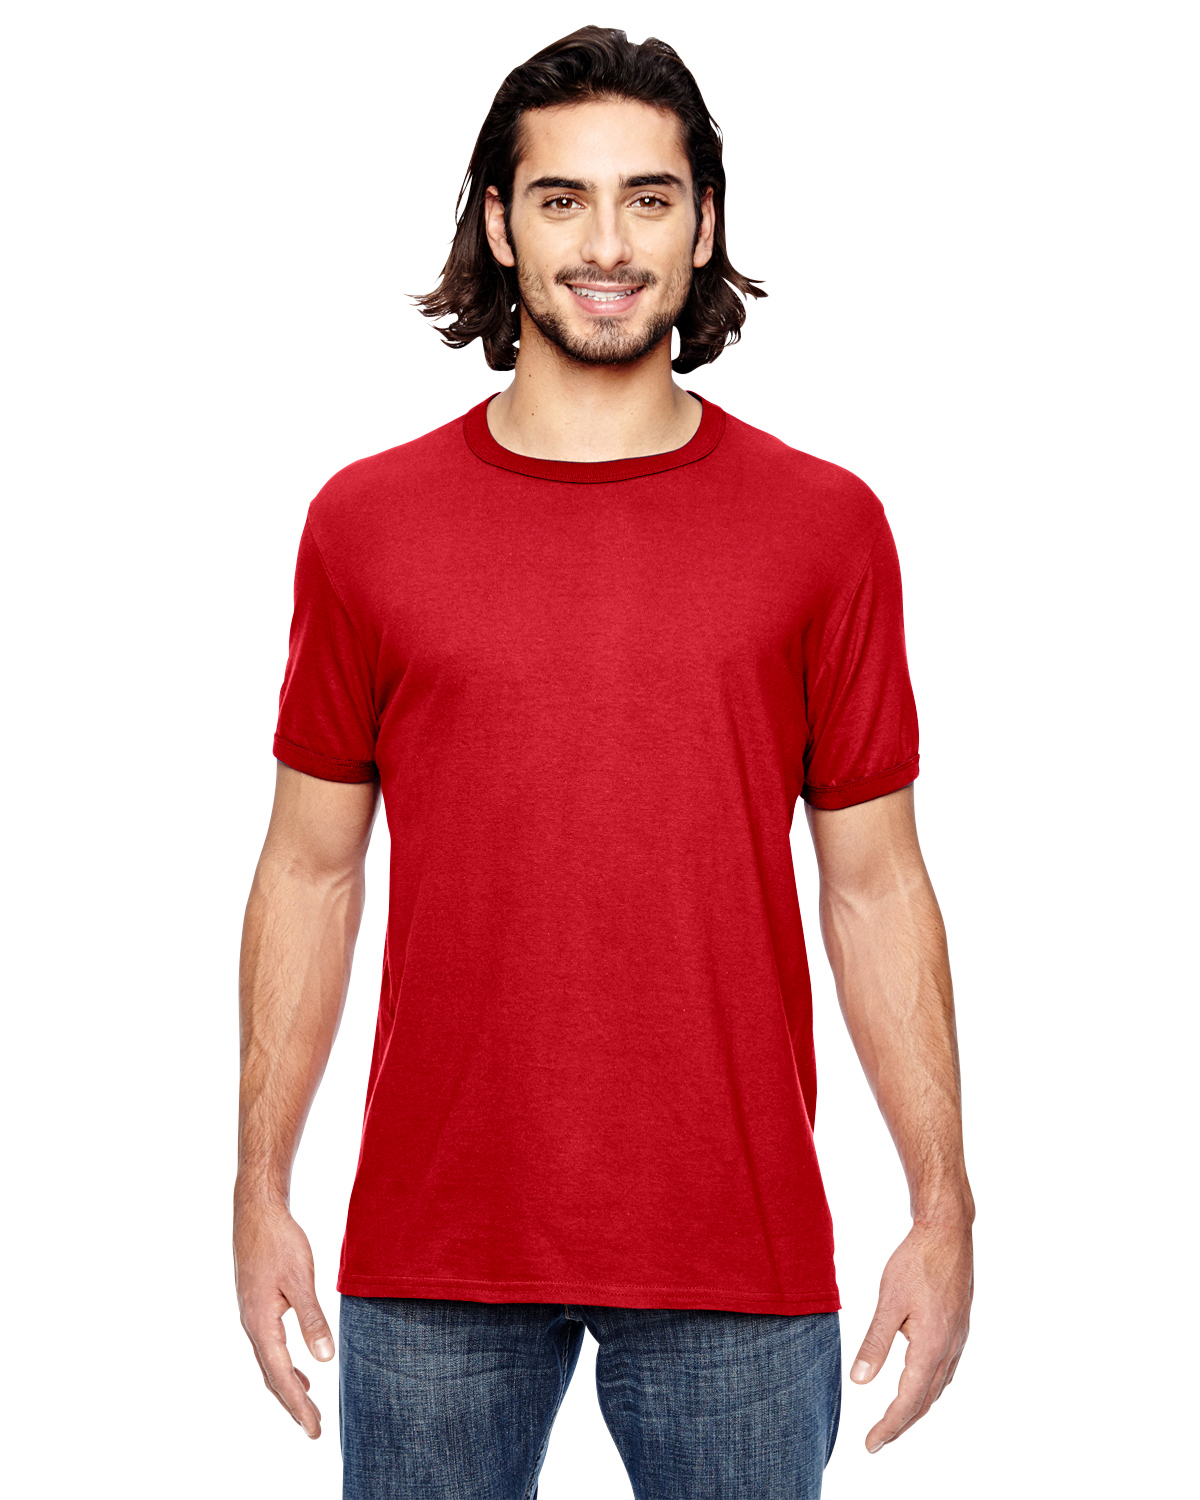 988AN Anvil Adult Lightweight Ringer T-Shirt